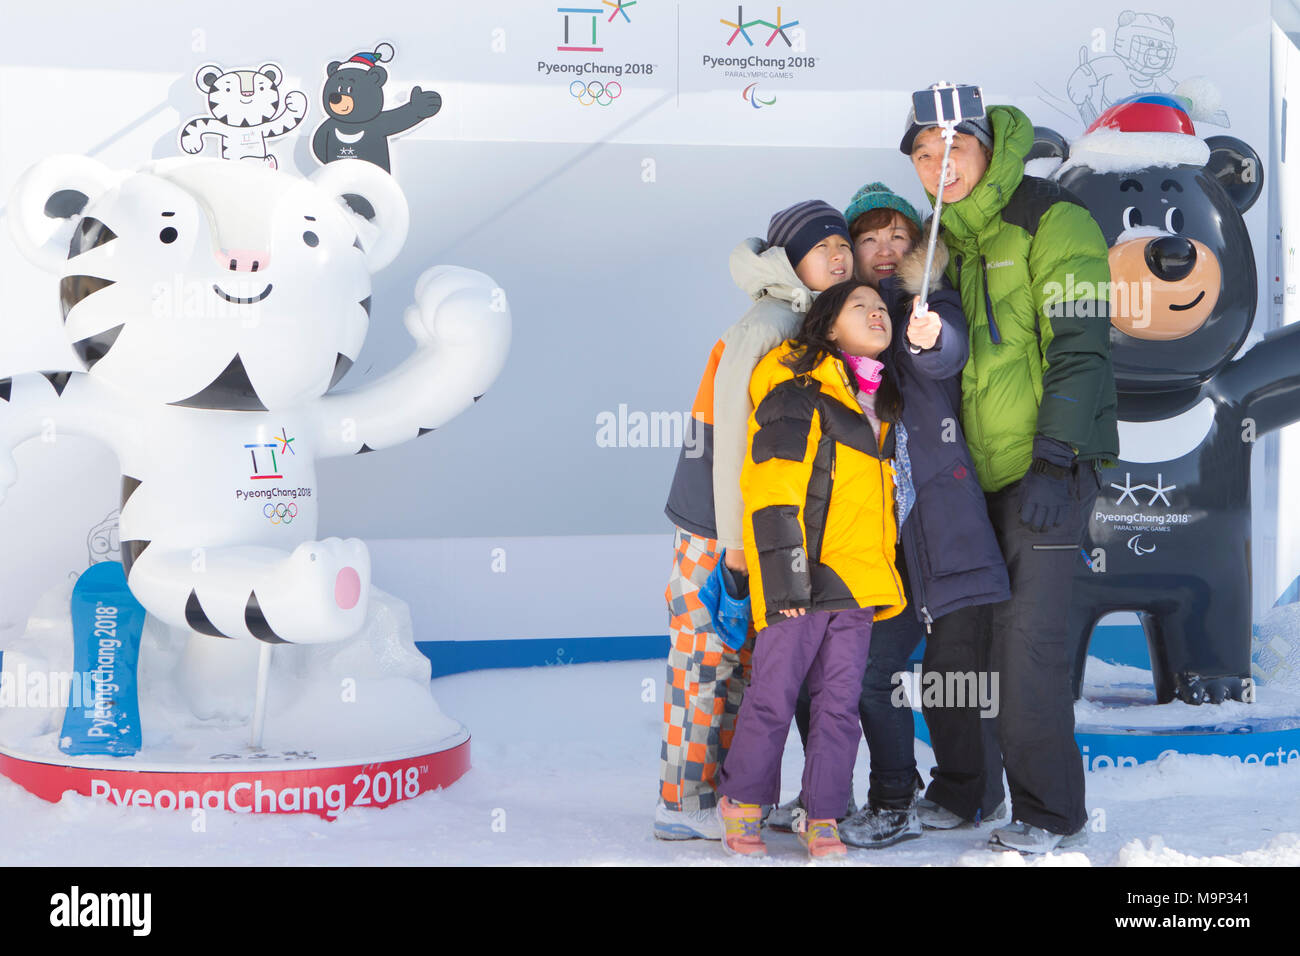 Una famiglia sta prendendo un gruppo selfie in Alpensia Resort, con le due mascotte (Soohorang e Bandabi) del 2018 Olimpiadi e Paraolimpiadi invernali. Il Alpensia Resort è una località sciistica e una attrazione turistica. Esso si trova sul territorio del comune di Daegwallyeong-myeon, nella contea di Pyeongchang, ospitando le Olimpiadi Invernali nel febbraio 2018. La stazione sciistica è di circa 2 ore e mezzo da Seoul o dall'Aeroporto di Incheon in auto, prevalentemente tutti autostrada. Alpensia dispone di 6 piste per lo sci e lo snowboard, con corse fino a 1,4 km (0,87 mi) lungo, per principianti e progrediti e un Foto Stock